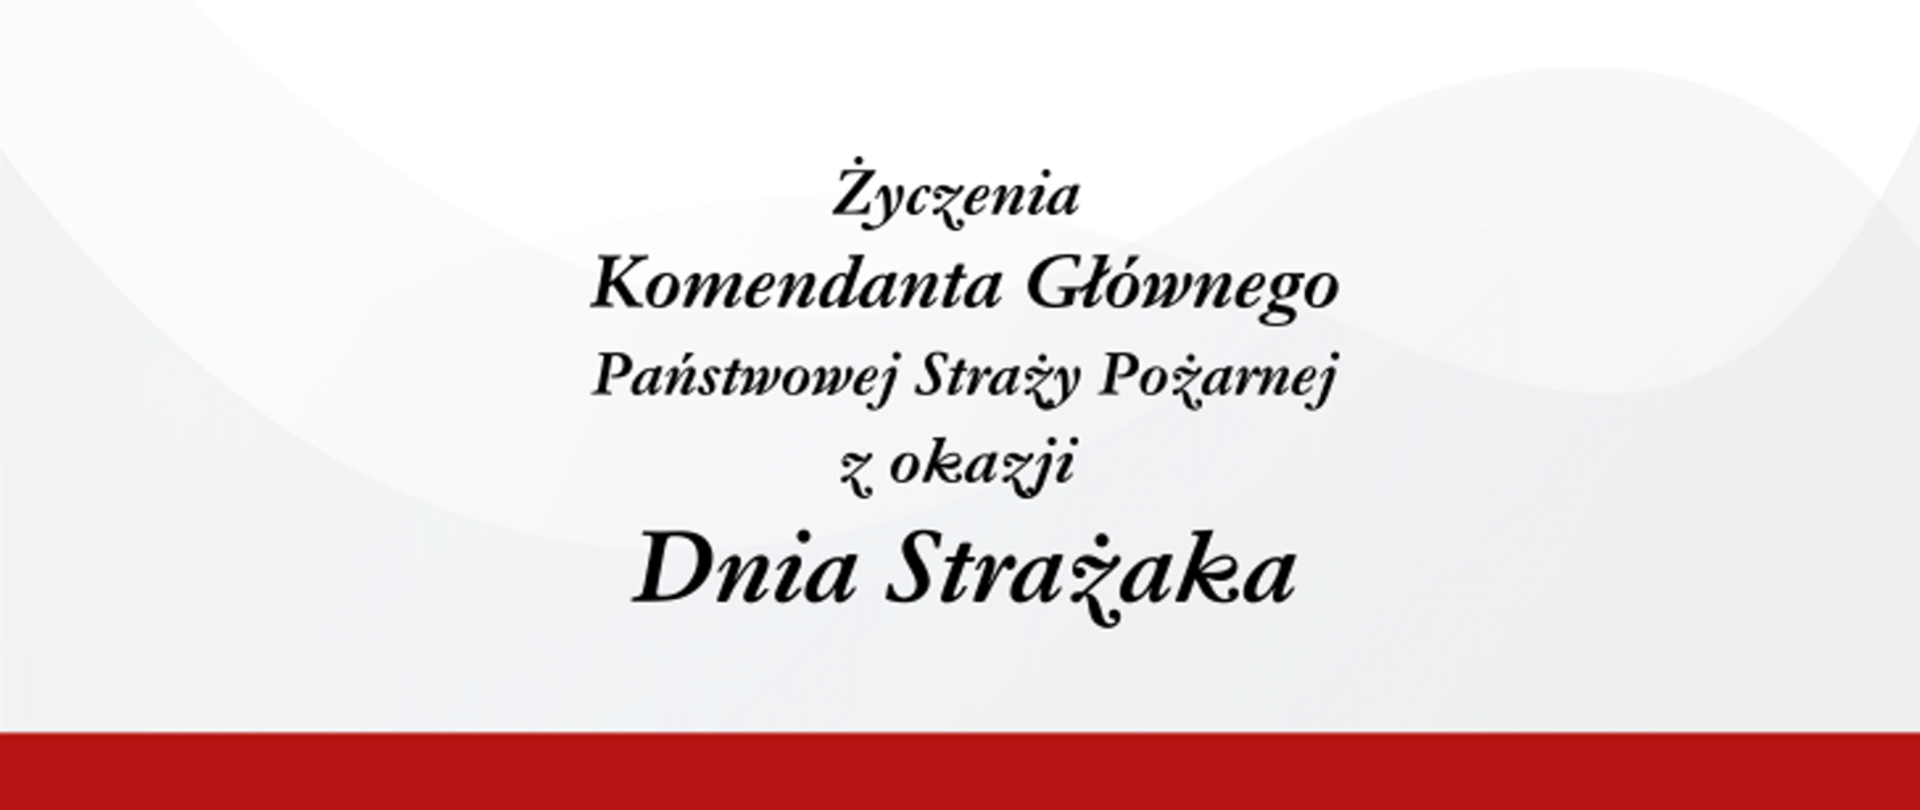 Na biało-szarym tle napis: "Życzenia Komendanta Głównego Państwowej Straży Pożarnej z okazji Dnia Strażaka".